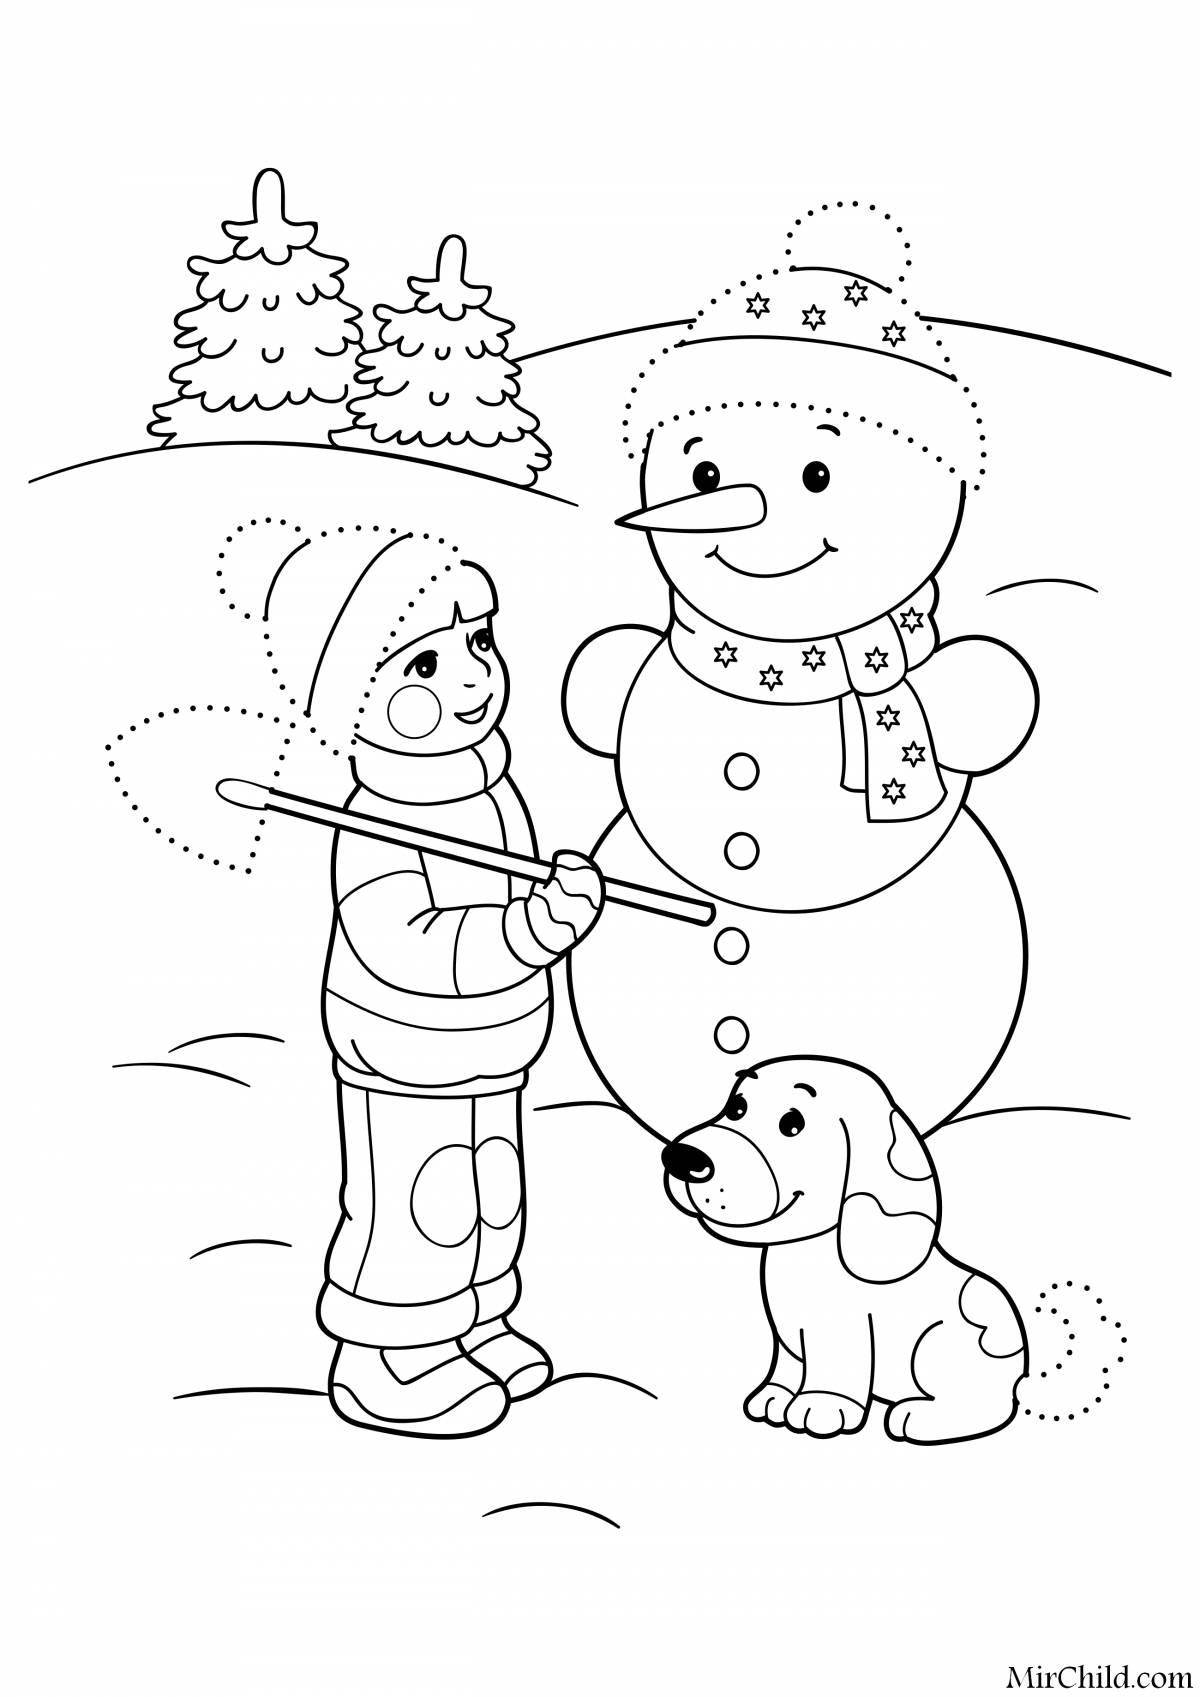 Забавная раскраска снеговик для детей 4-5 лет